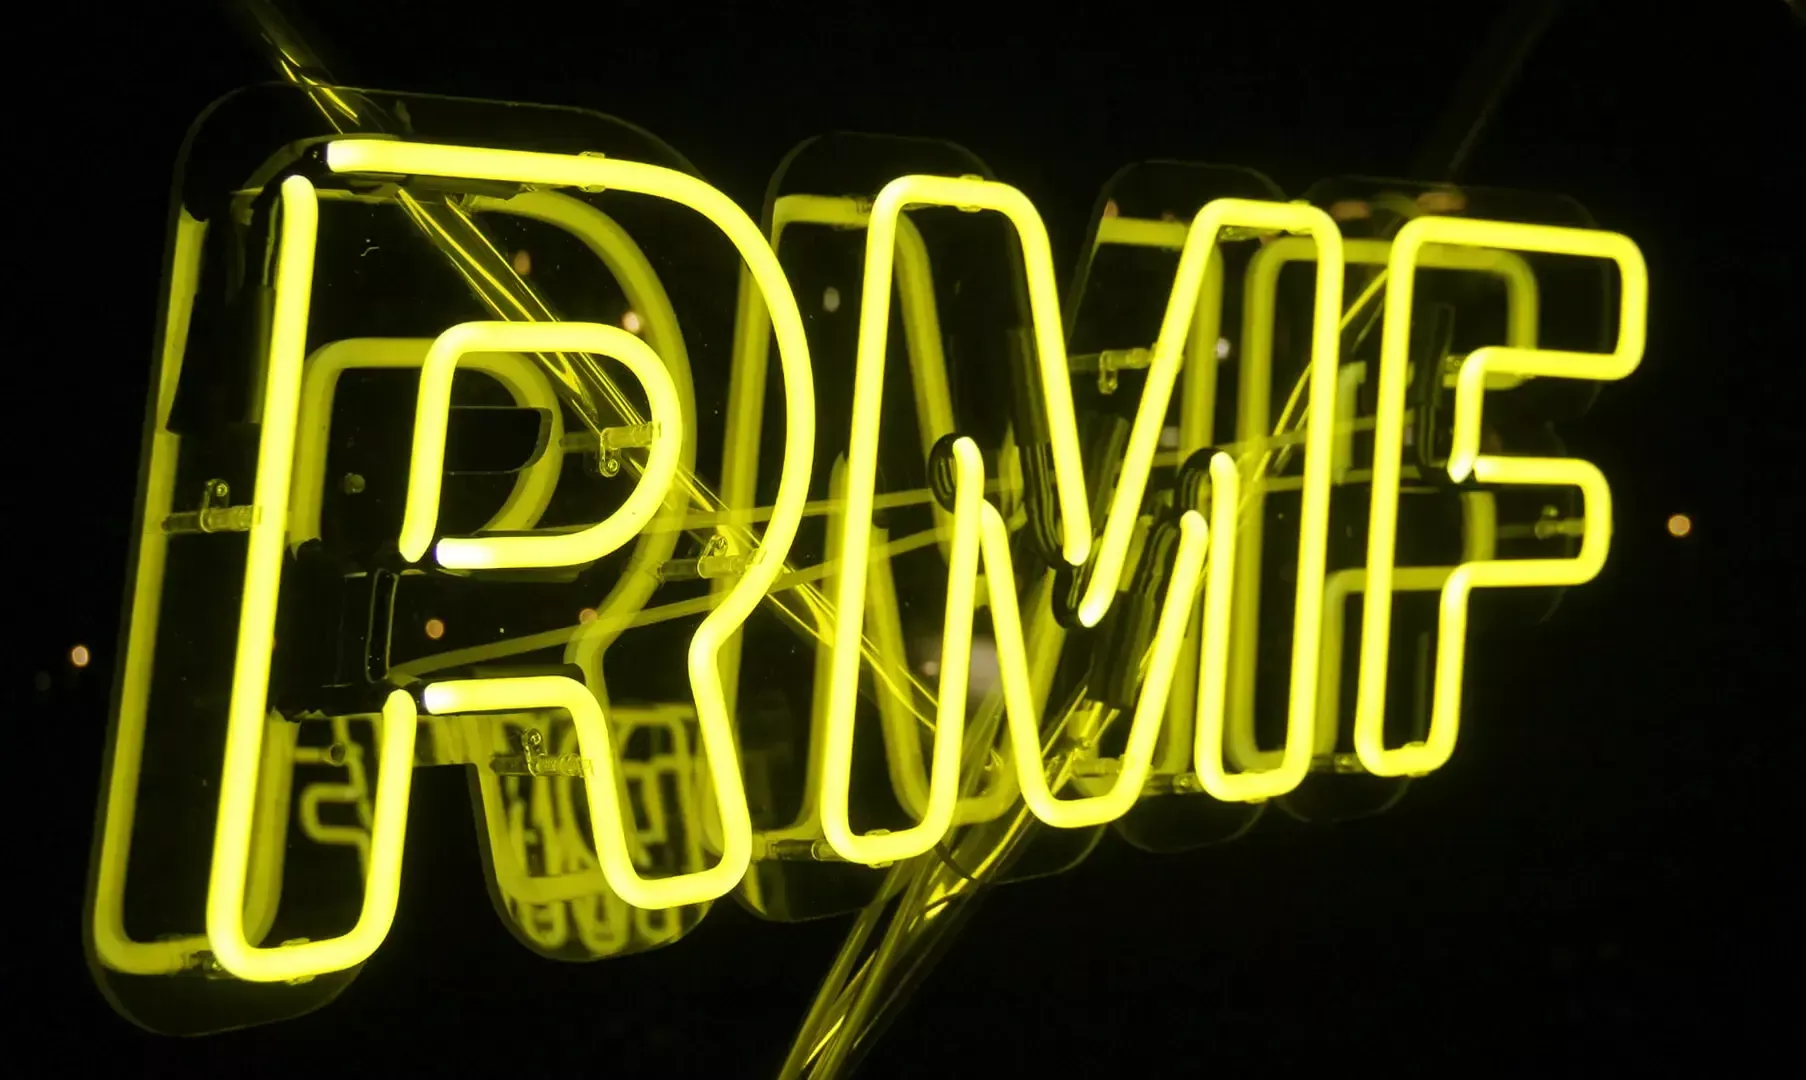 RMF - żółty neon dla Radia RMF, reklama neonowa.